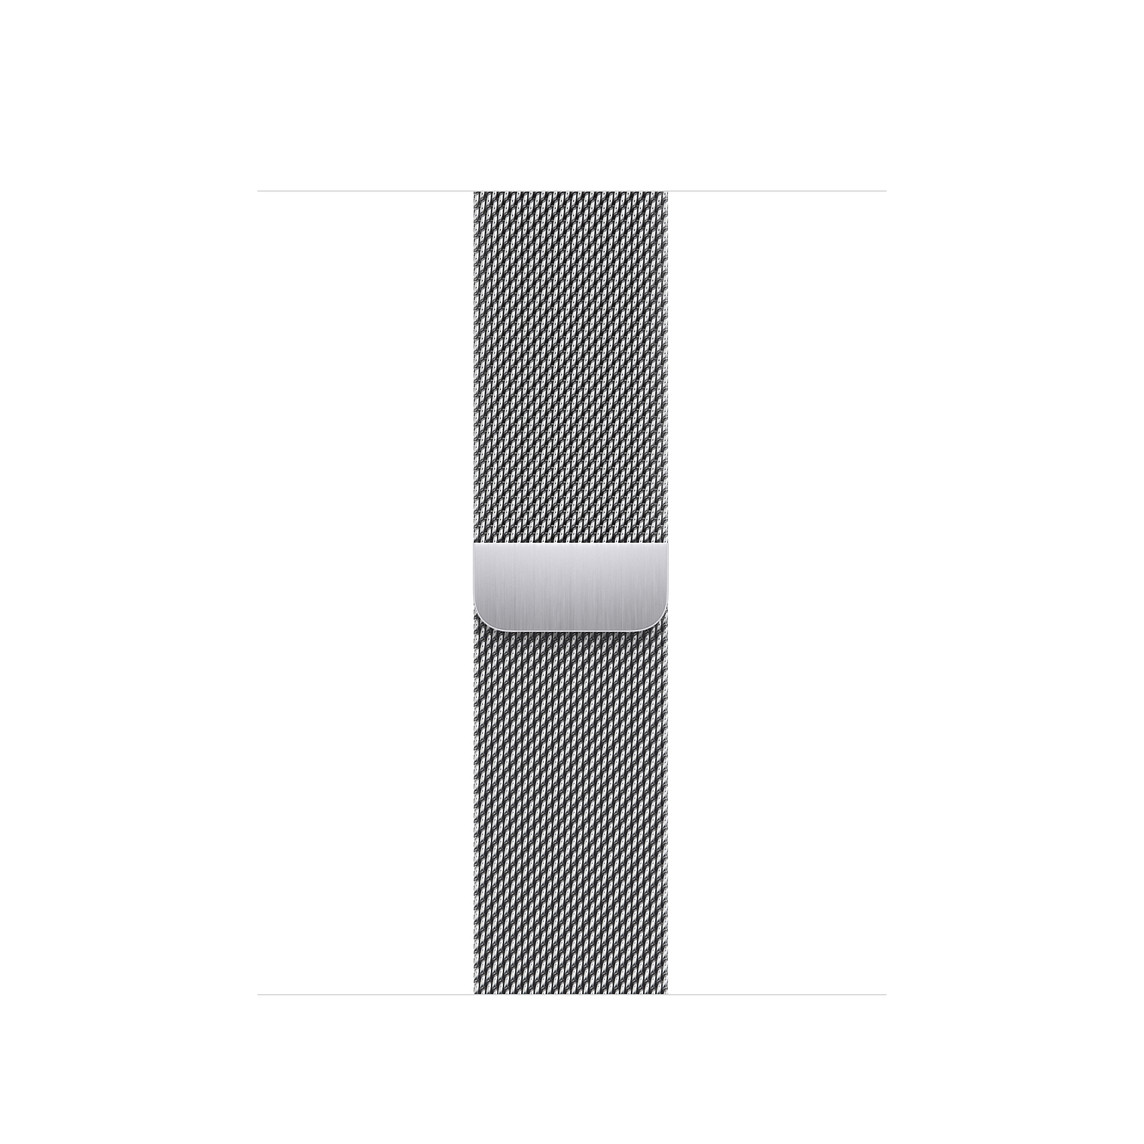 Correa estilo milanés color plata, hecha con malla de acero inoxidable pulido y cierre magnético